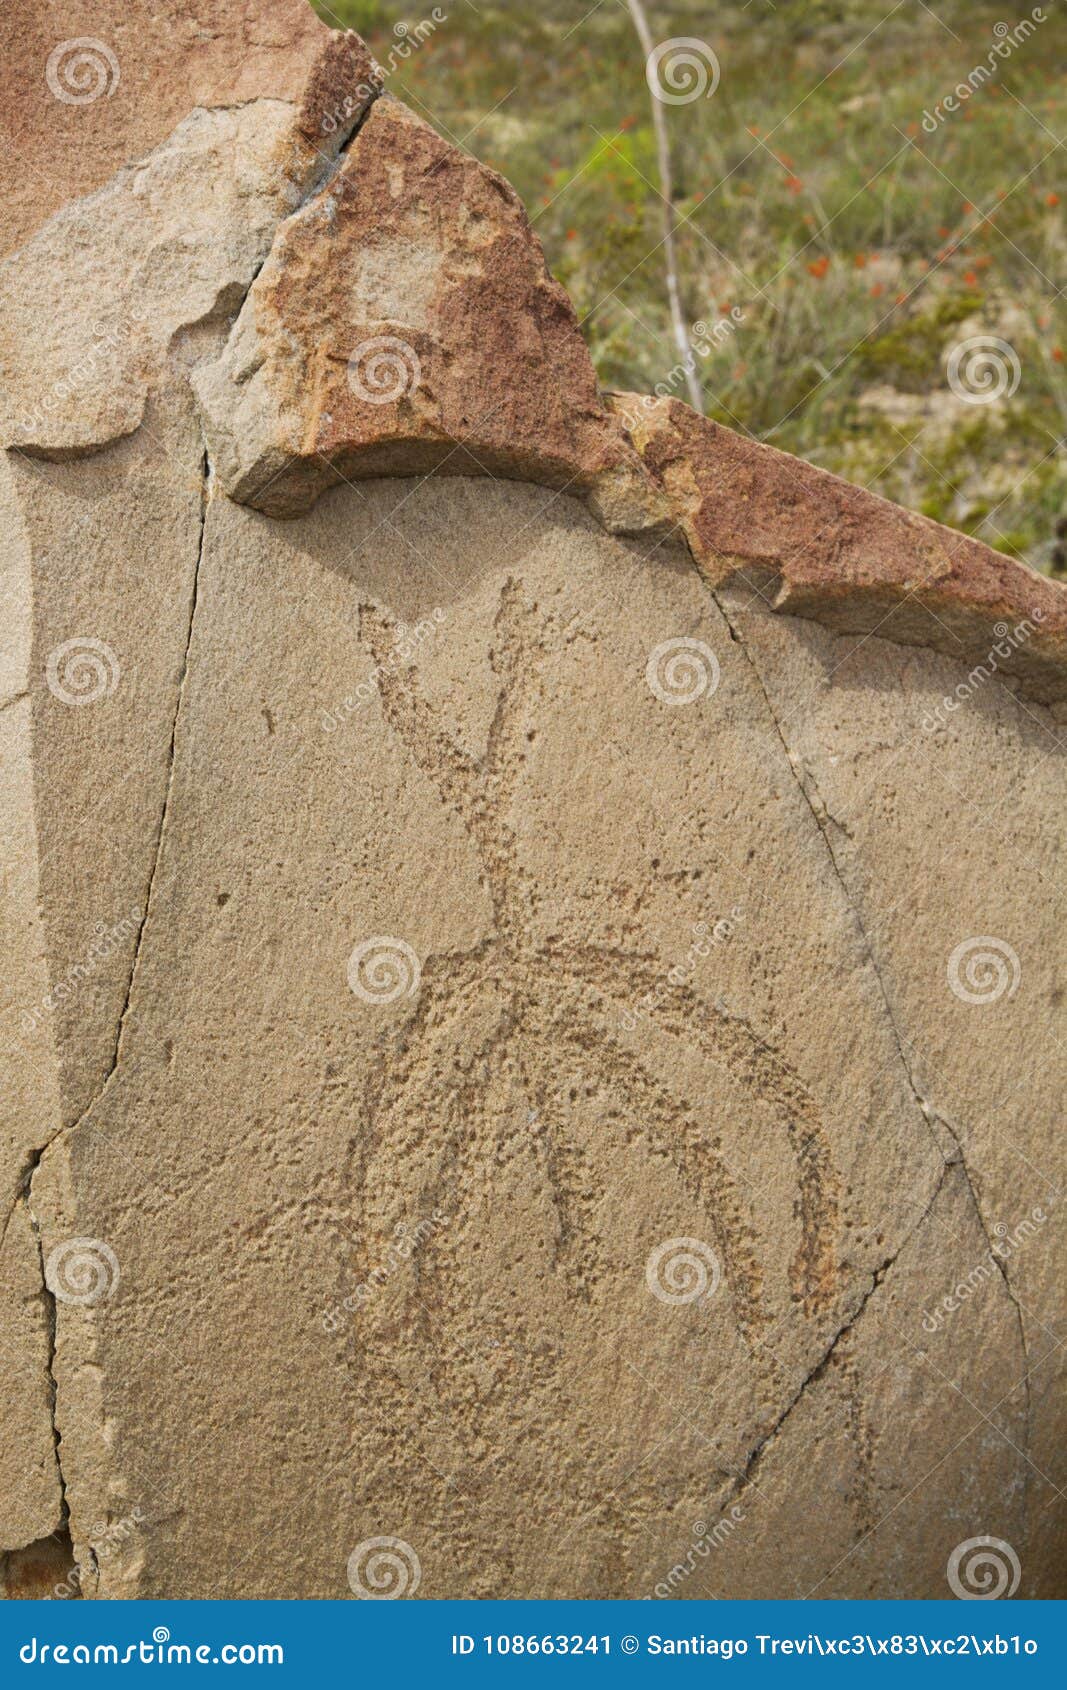 petroglyphs at boca de potrerillos, nuevo leÃÂ³n, mÃÂ©xico